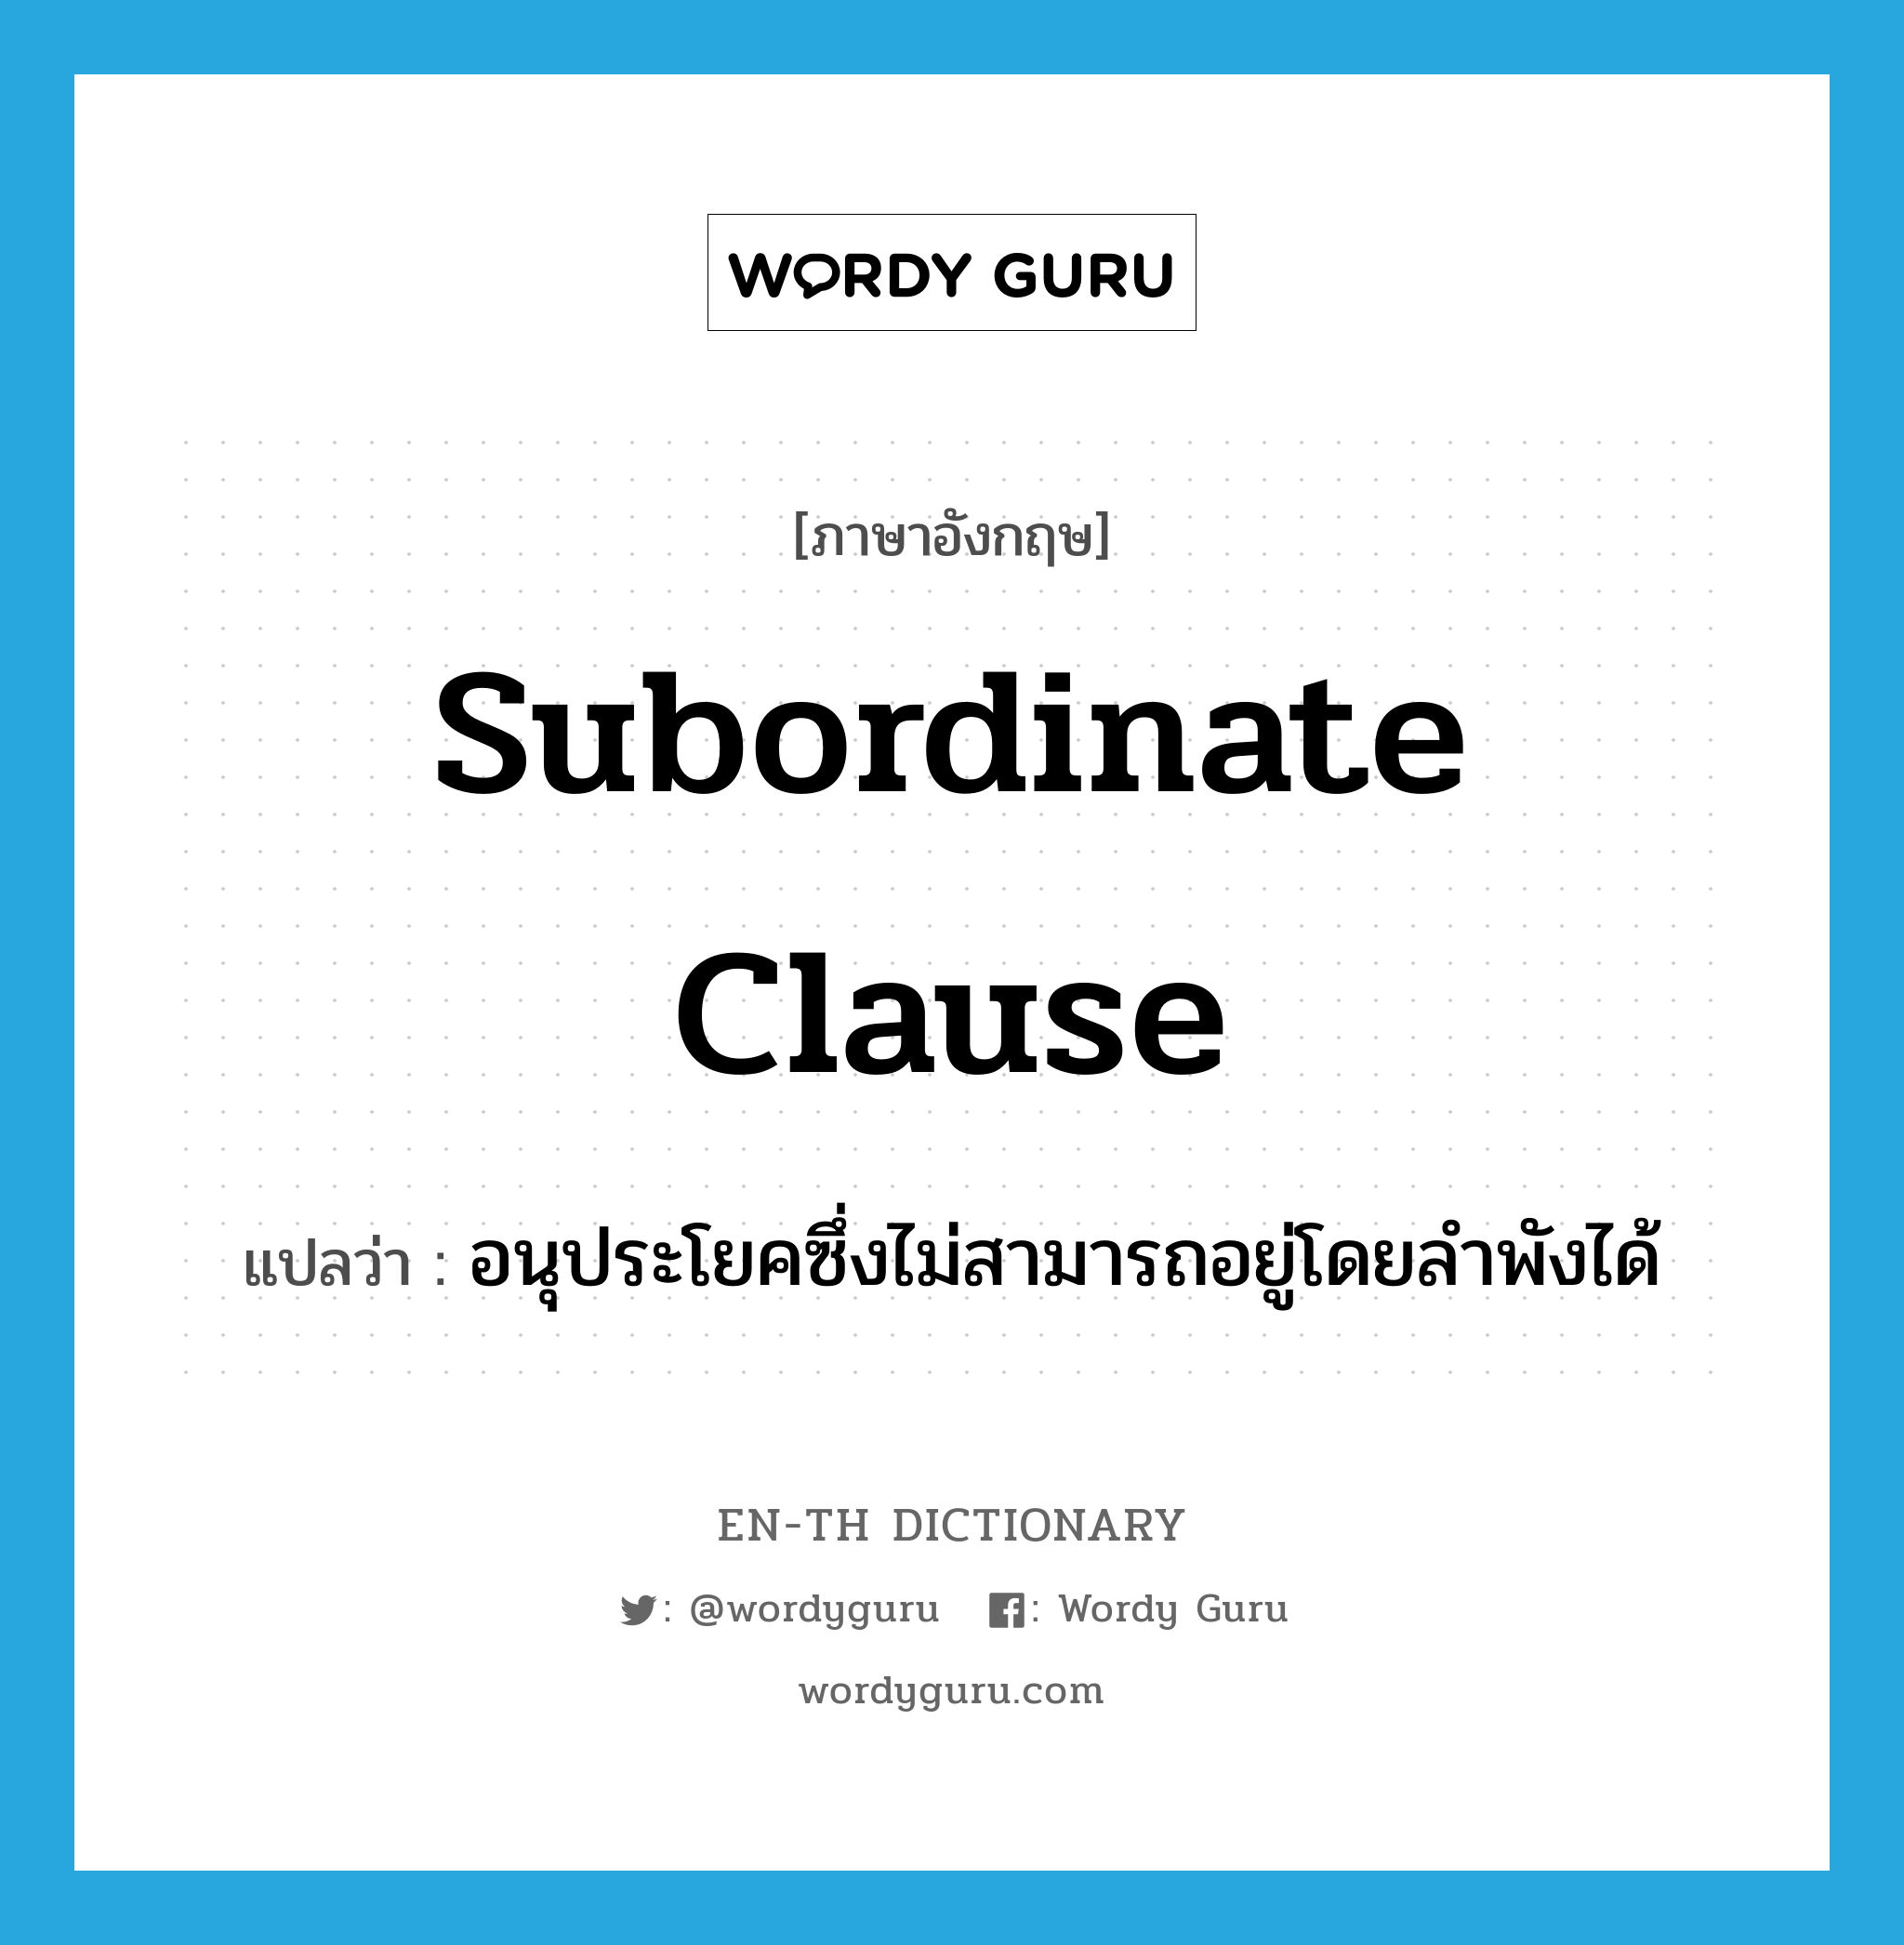 subordinate clause แปลว่า?, คำศัพท์ภาษาอังกฤษ subordinate clause แปลว่า อนุประโยคซึ่งไม่สามารถอยู่โดยลำพังได้ ประเภท N หมวด N